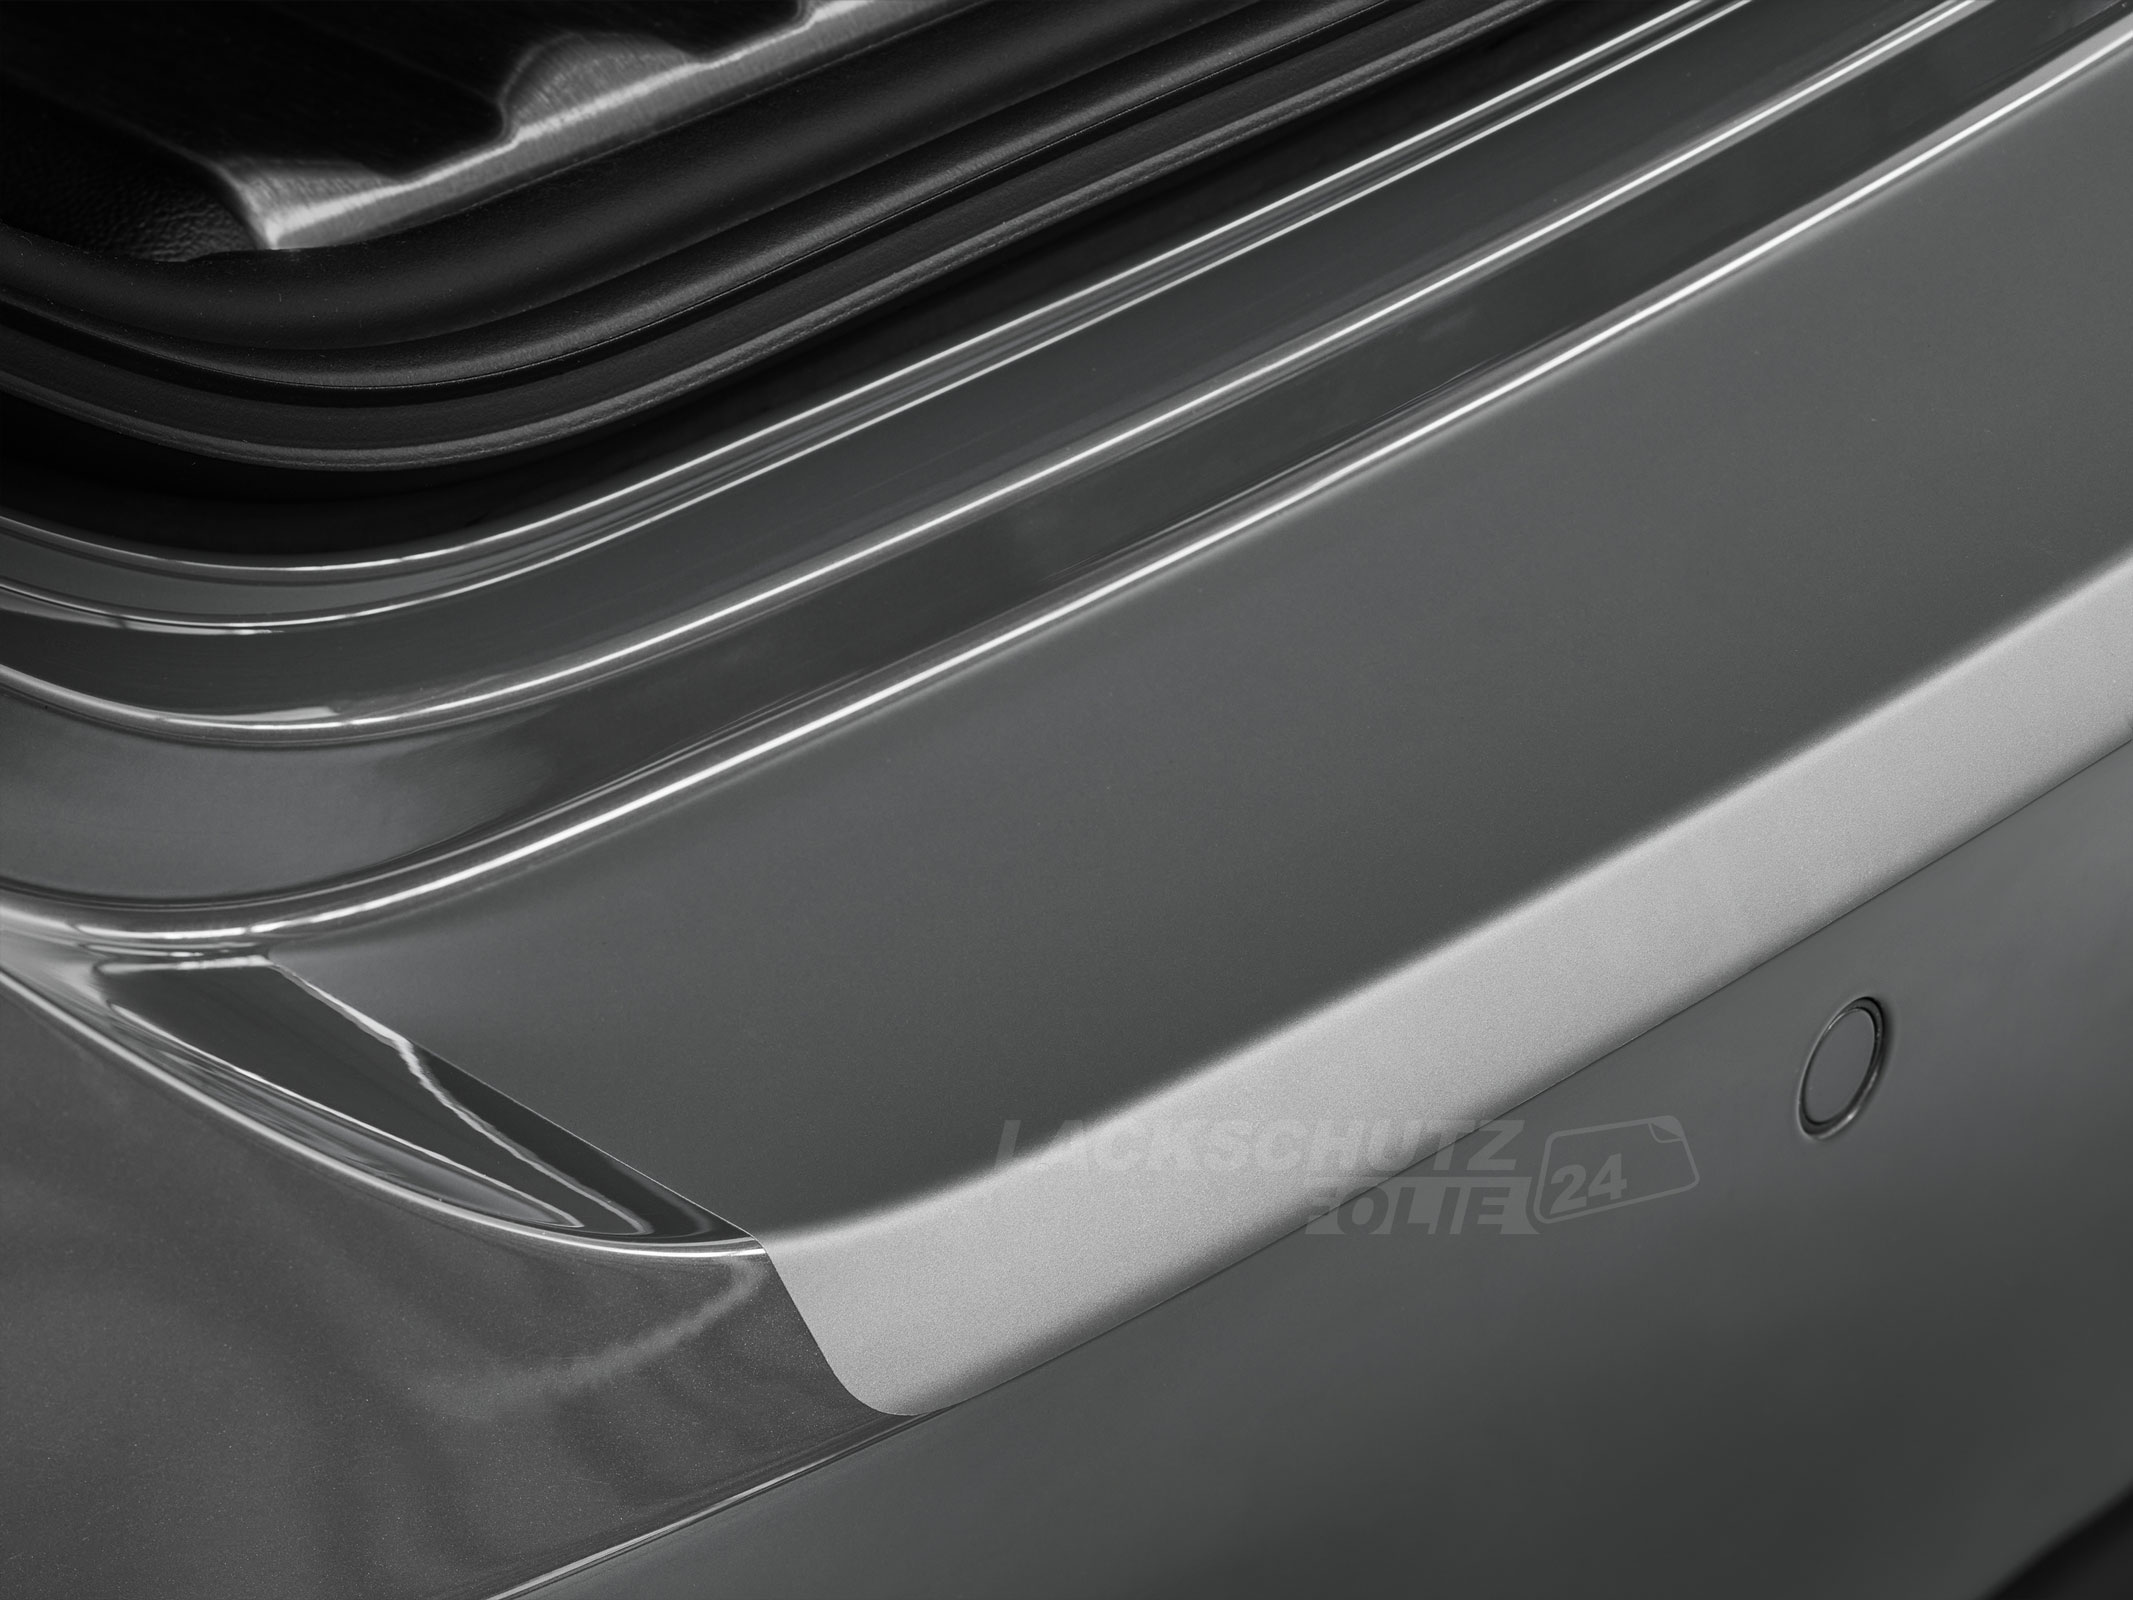 Ladekantenschutzfolie - Transparent Glatt MATT 110 µm stark  für Seat Alhambra (II) Typ 7N, ab BJ 10/2010 + Facelift